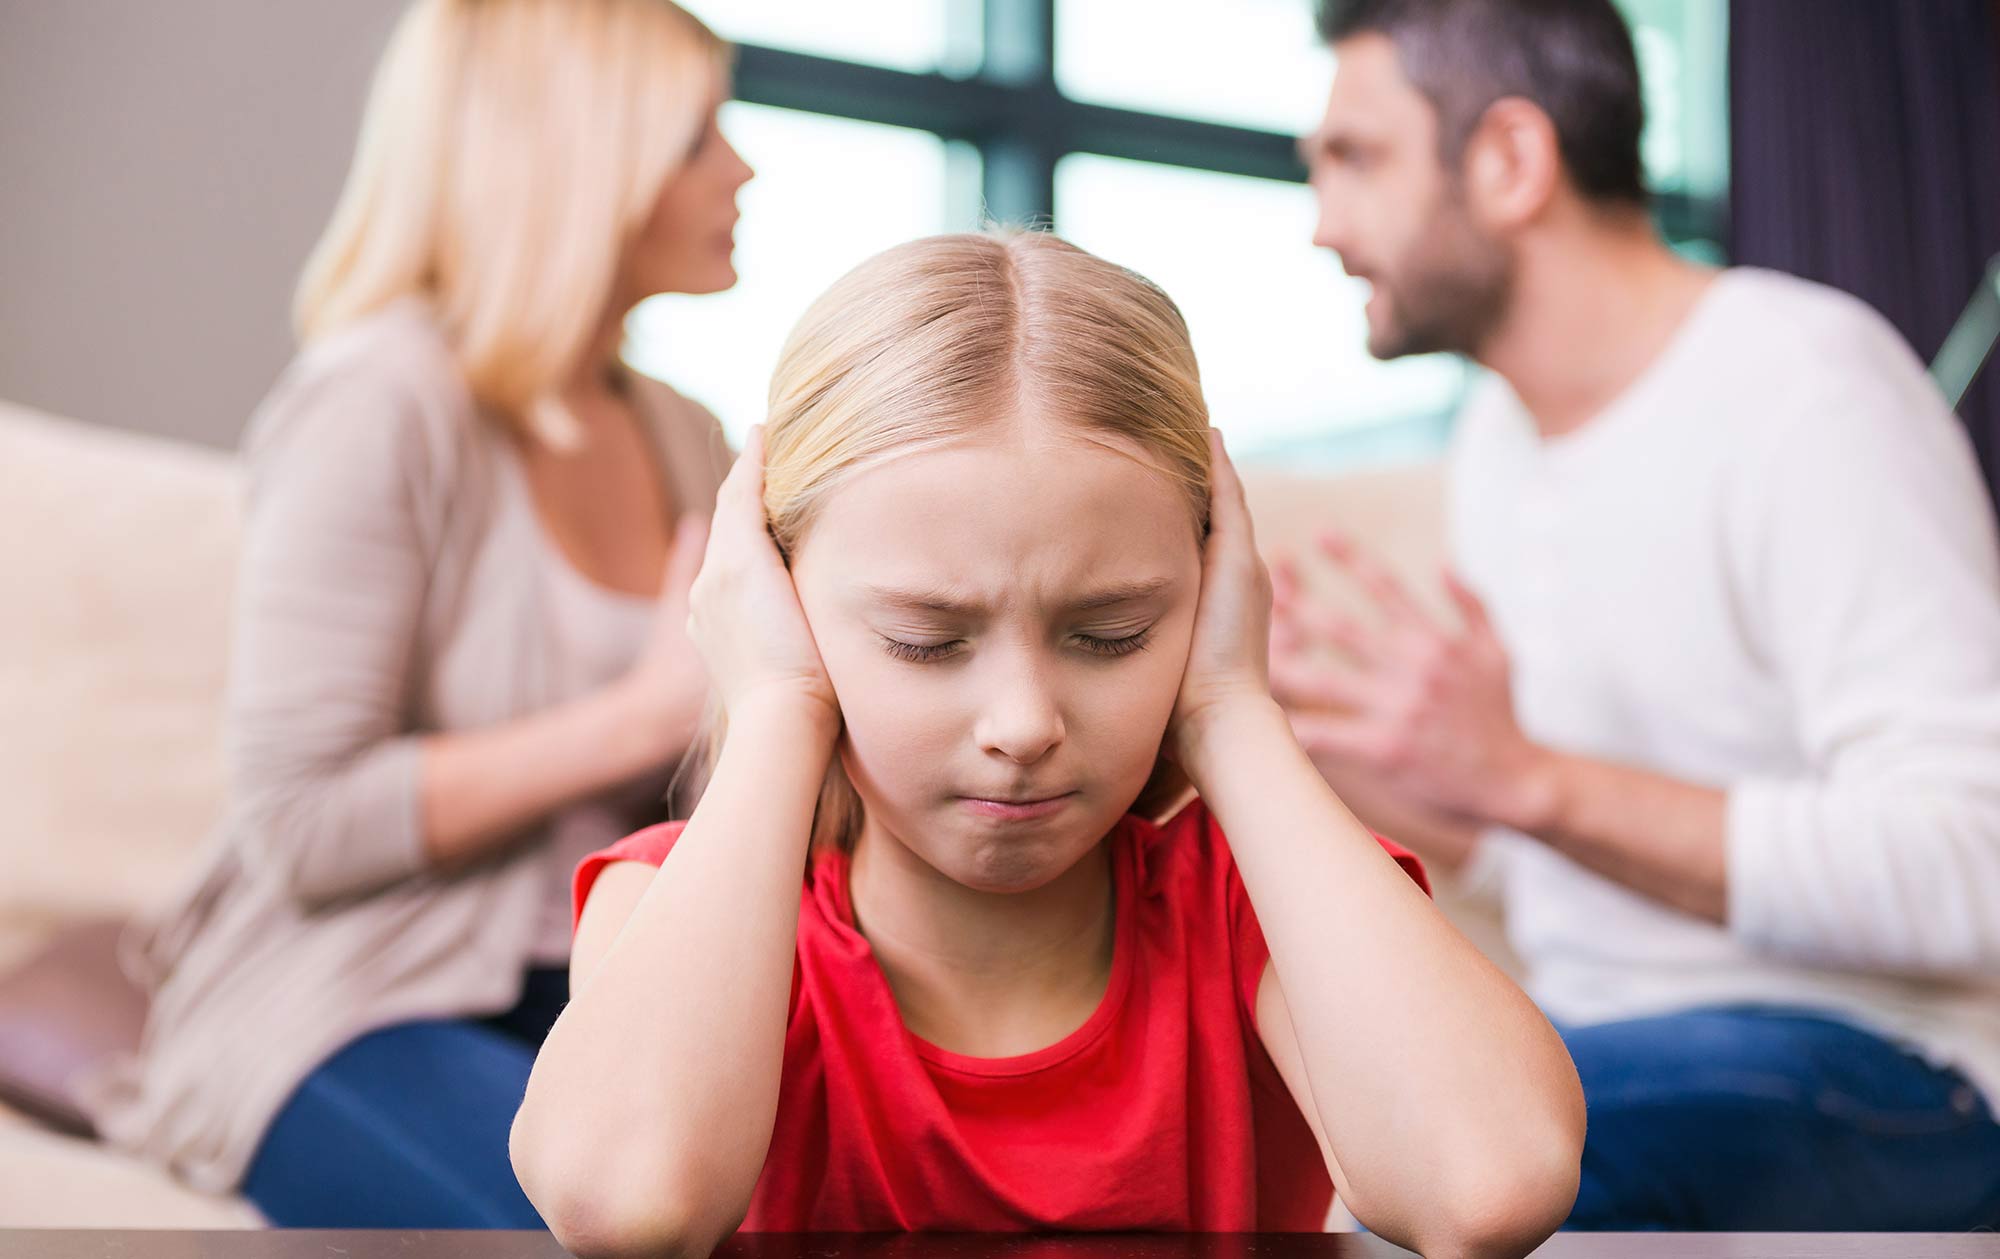 Конфликты между детьми - что делать родителям? | отвечает психолог ольга товпеко